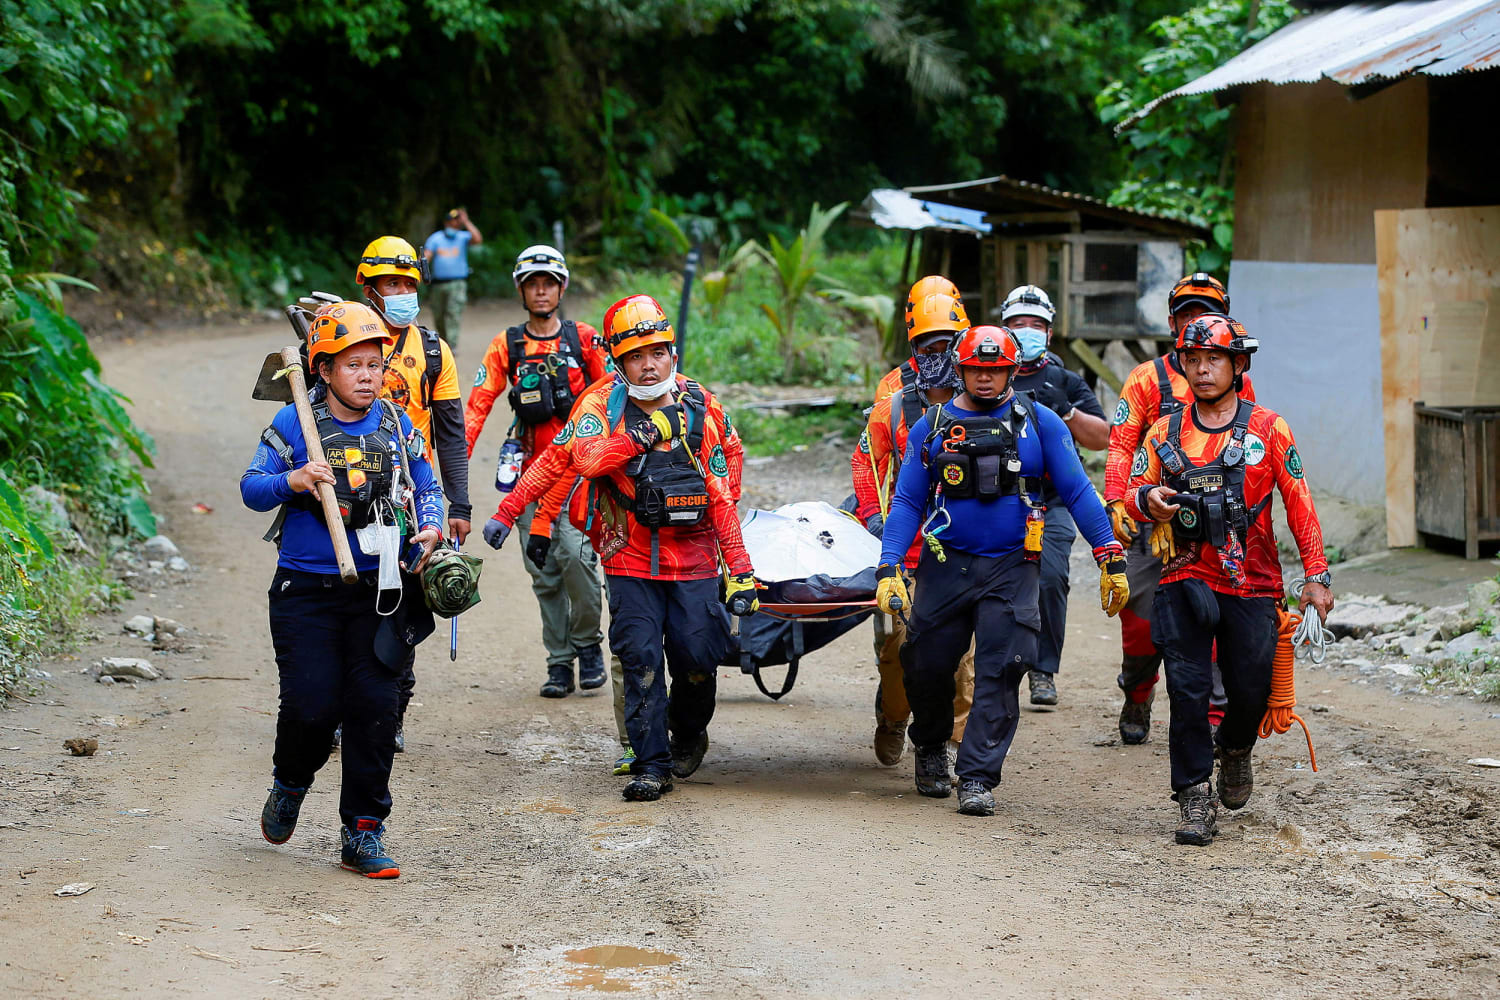 Het dodental als gevolg van de aardverschuiving op de Filipijnen is opgelopen tot 54 personen